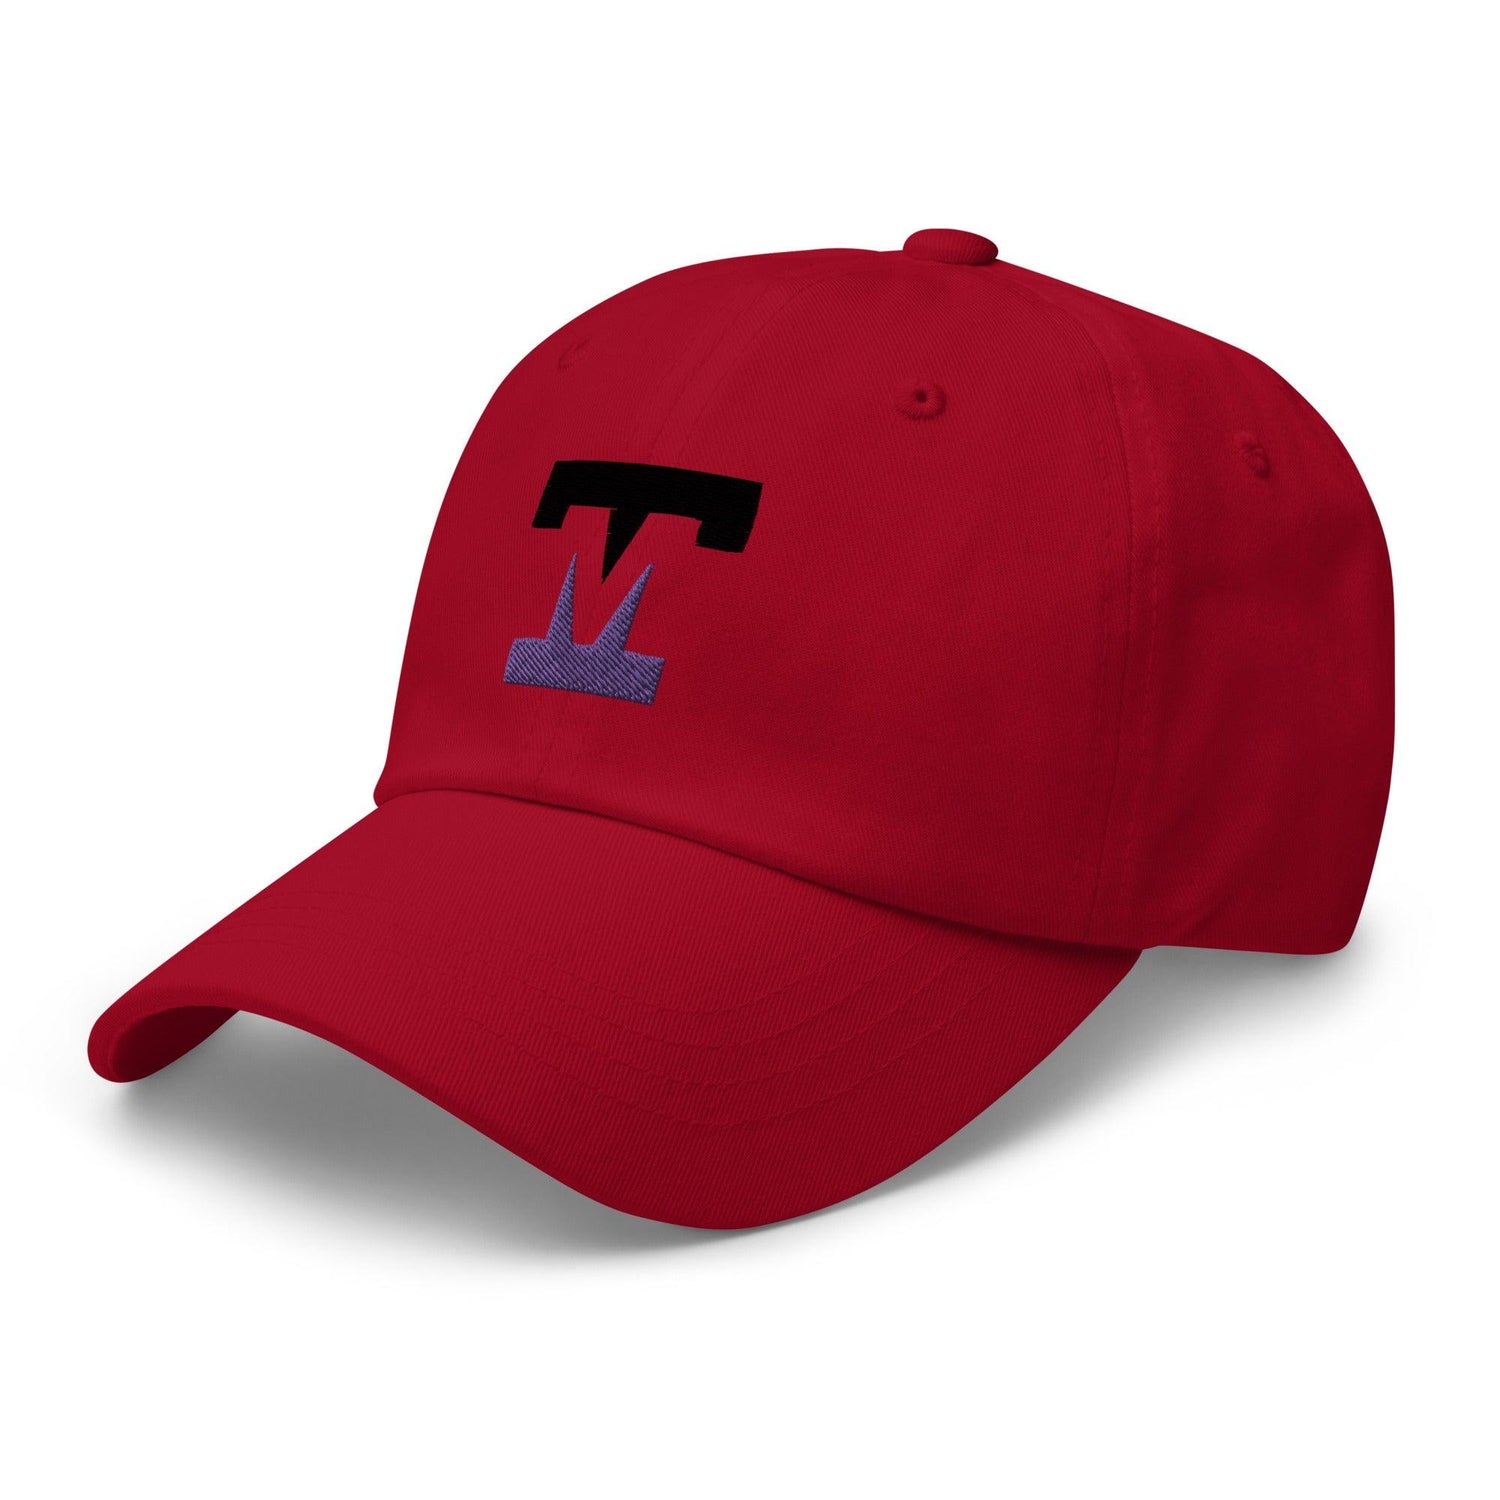 Tanner Mink "Elite" hat - Fan Arch